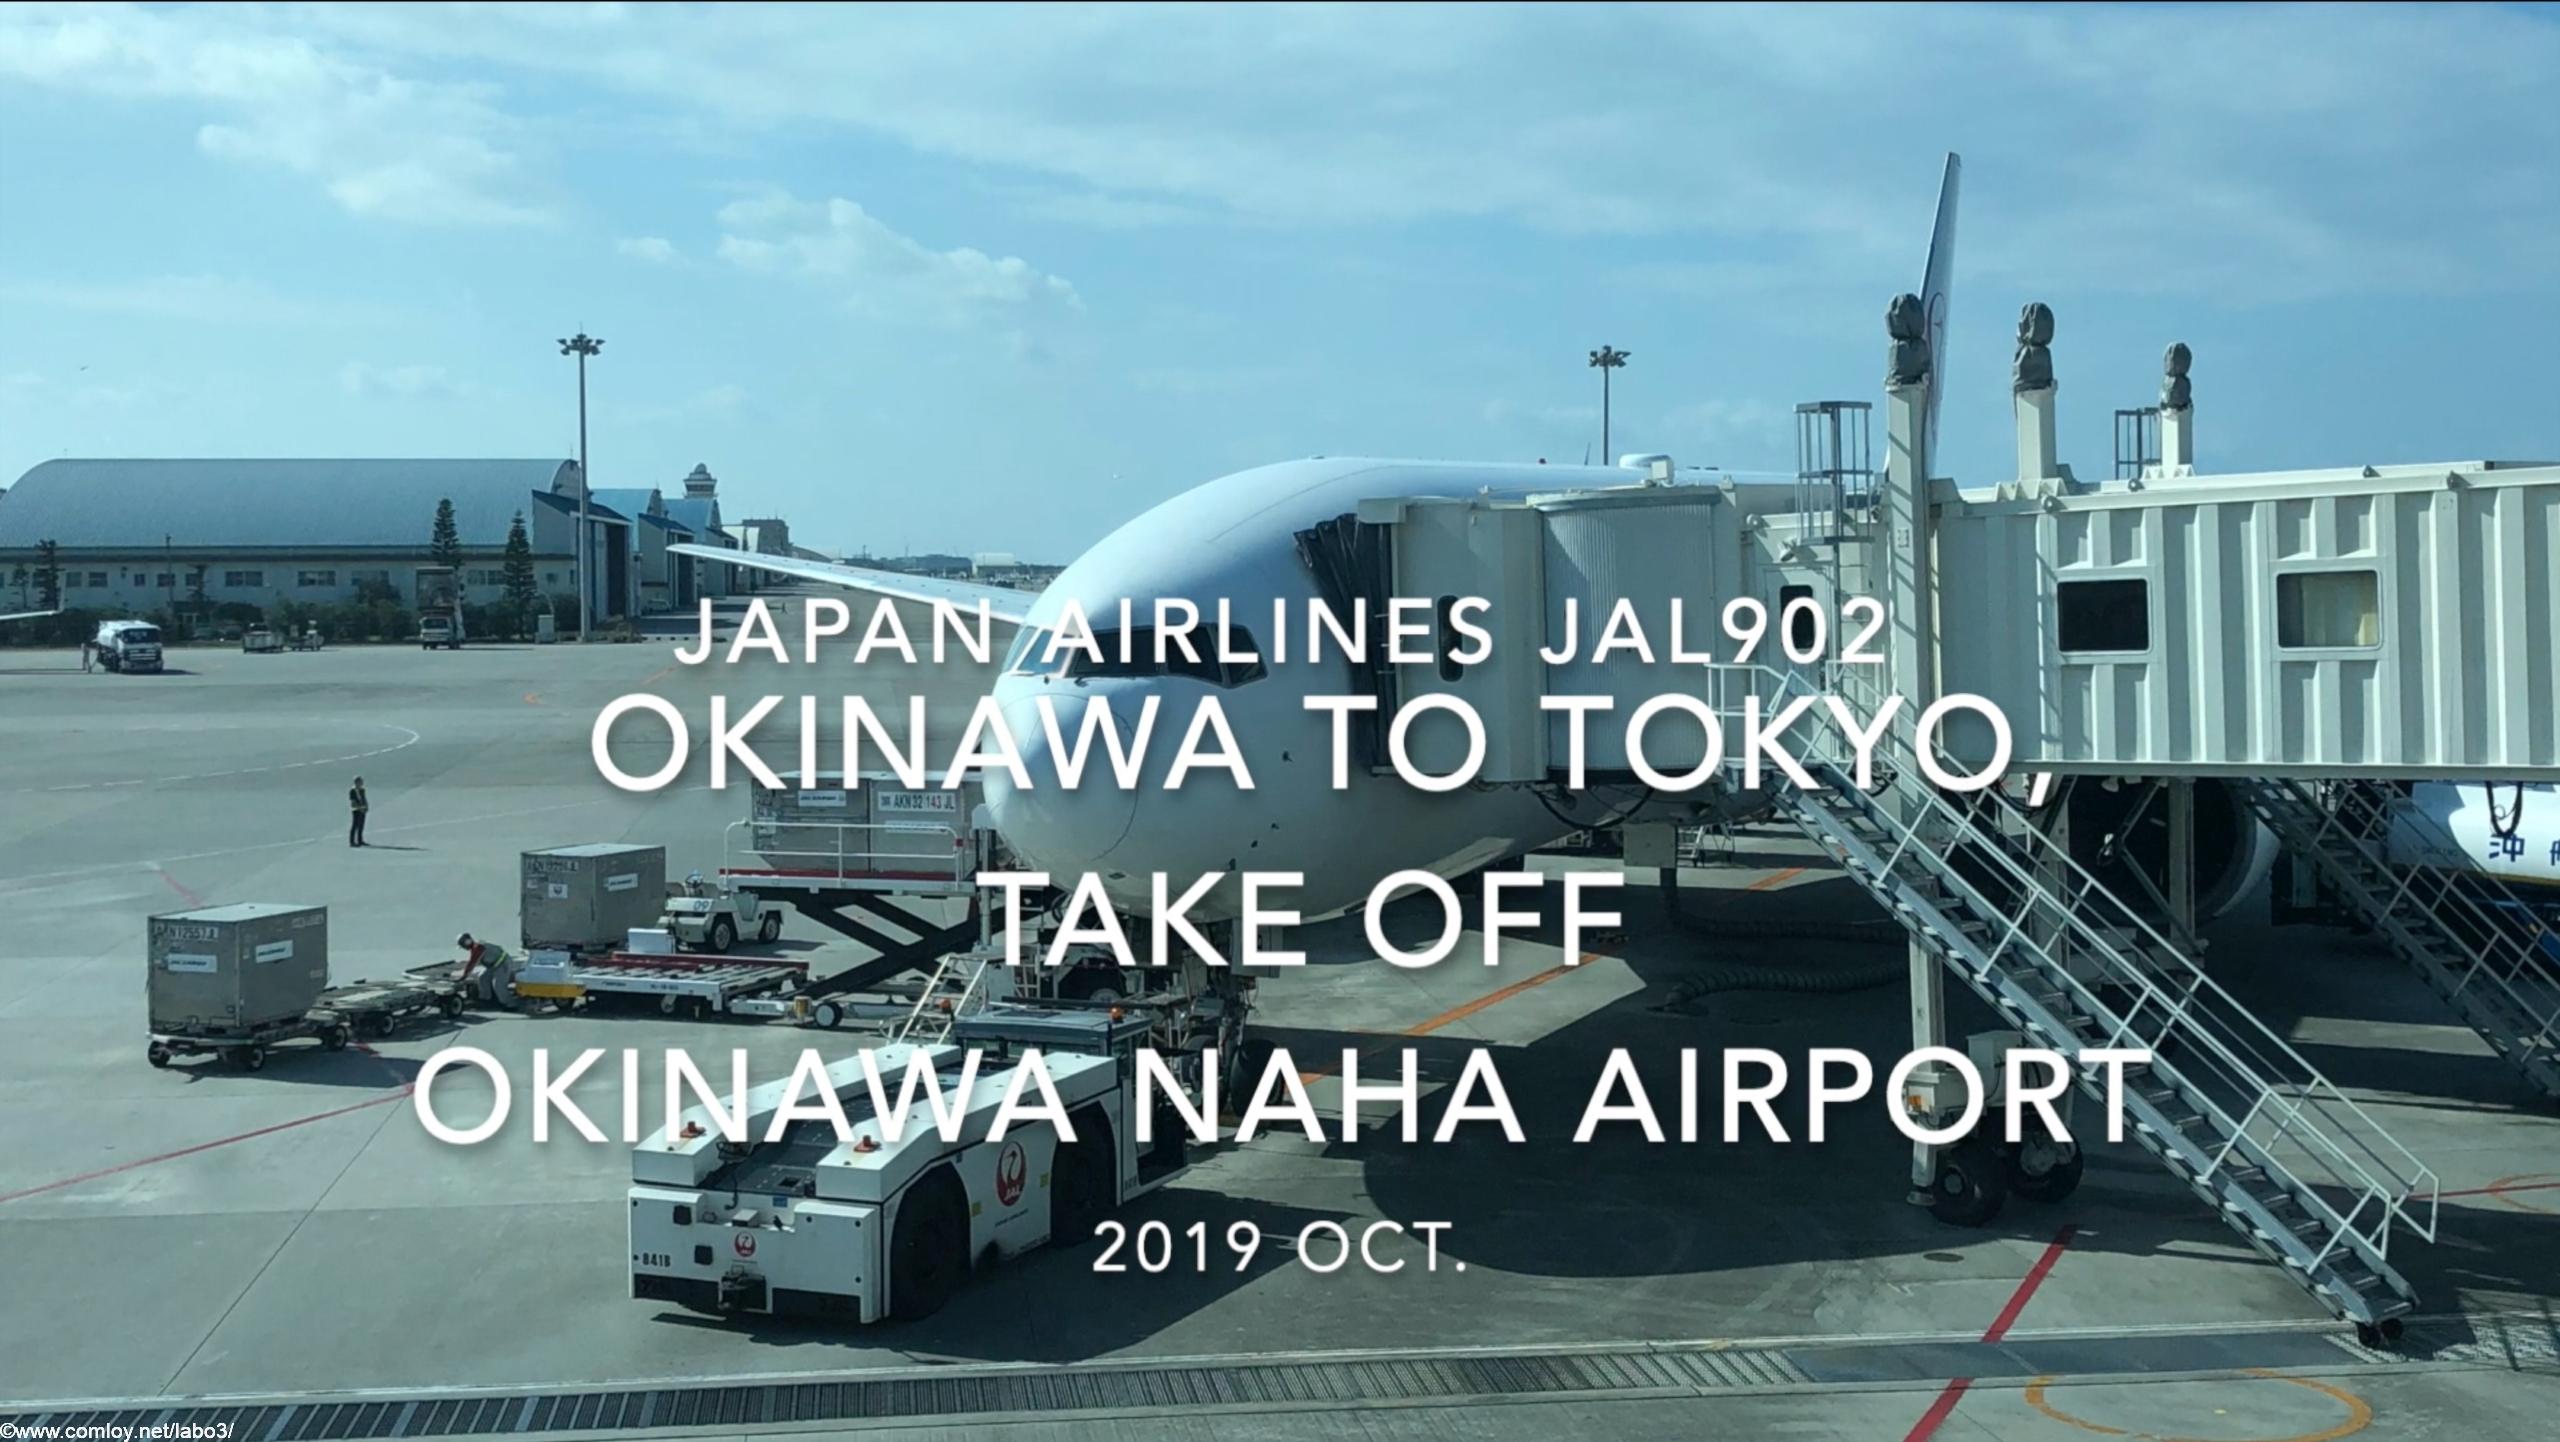 【機内から離着陸映像】2019 Oct Japan airlines JAL902 OKINAWA NAHA to TOKYO HANEDA, Take off OKINAWA NAHA Airport